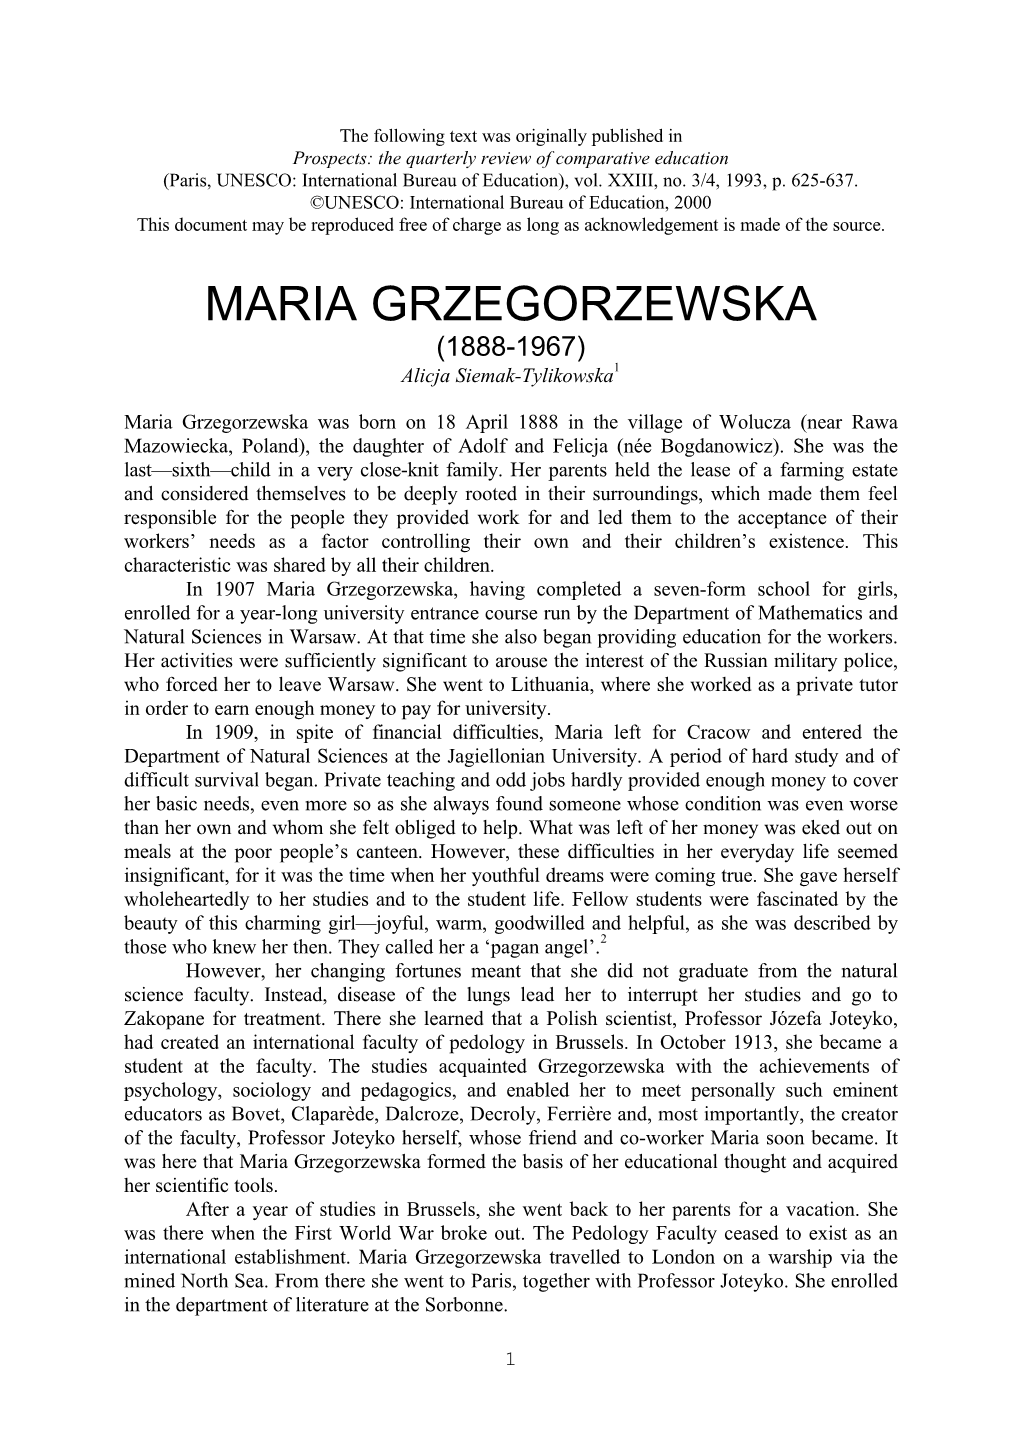 MARIA GRZEGORZEWSKA (1888-1967) Alicja Siemak-Tylikowska1